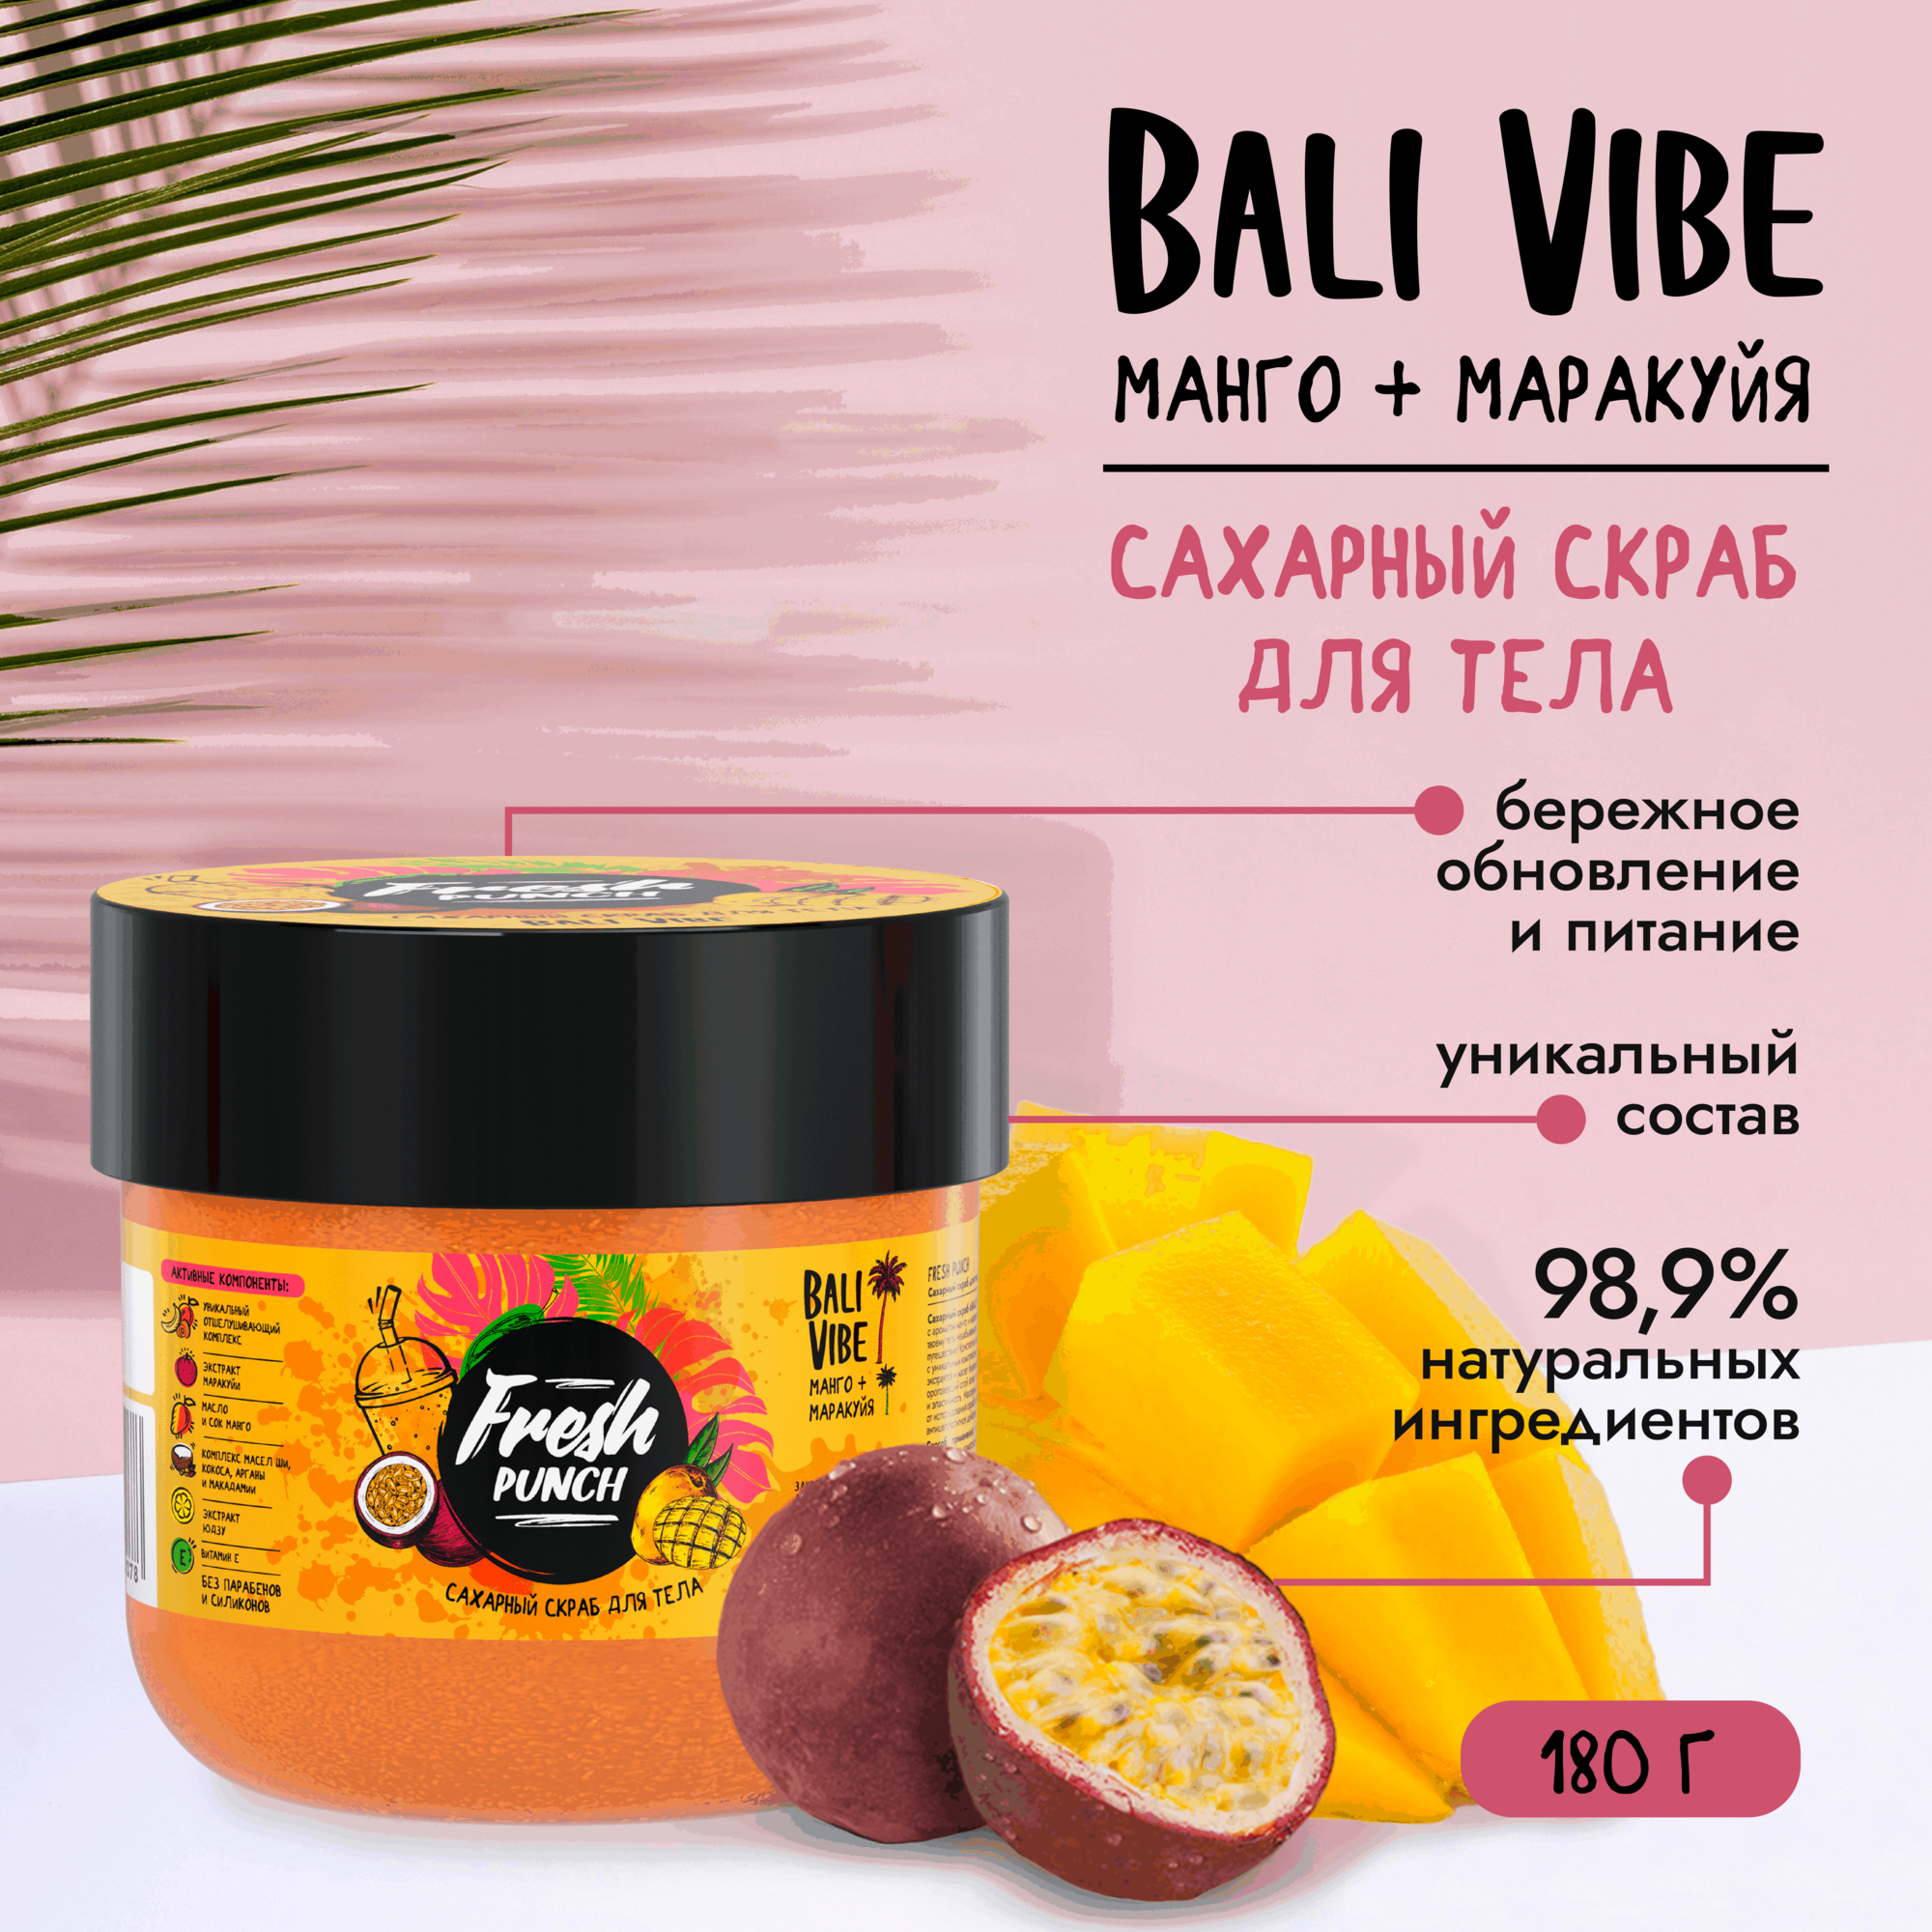 Сахарный скраб для тела антицеллюлитный "BALI VIBE" манго-маракуйя Fresh Punch 180г